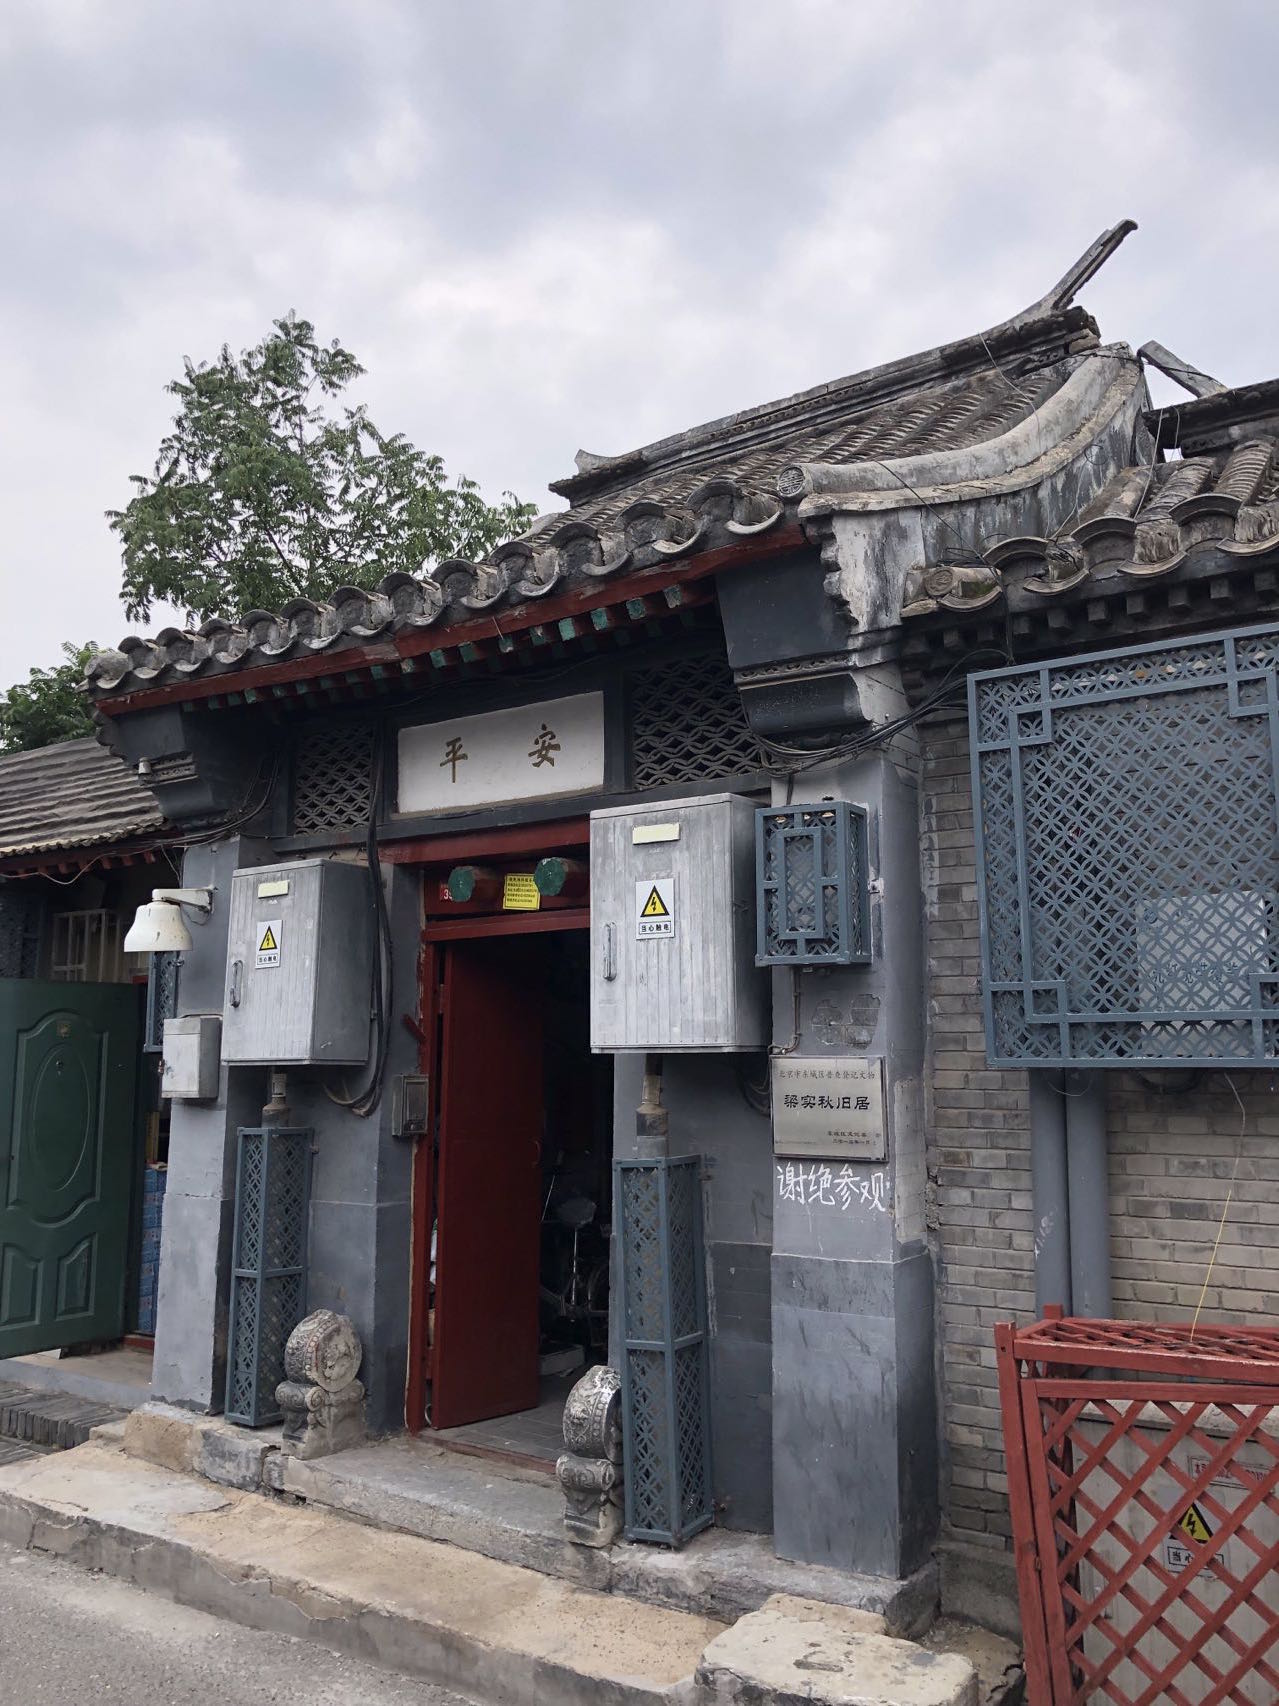 Liang-Shiqiu-s-former-residence-in-Neiwubujie-Hutong.-Image-via-That-s-Alistair-Baker-Brian.jpeg